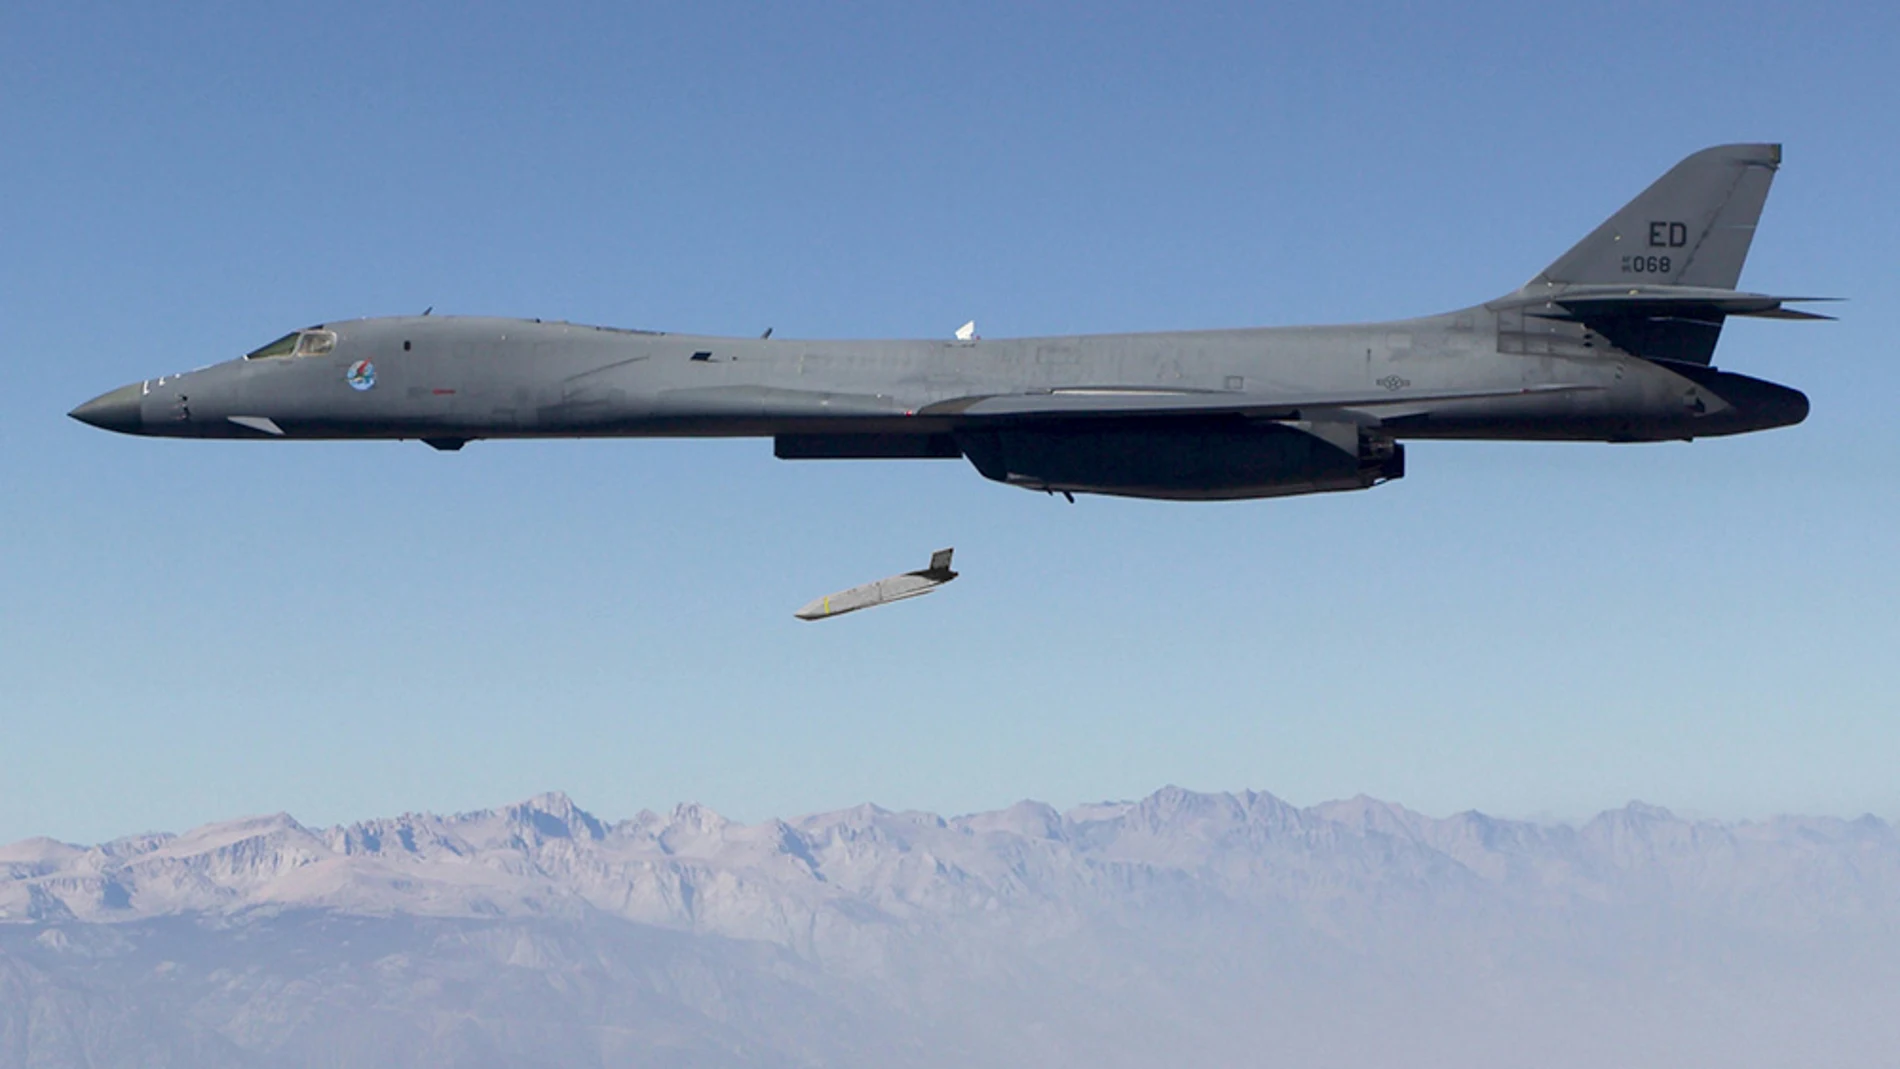 Imagen de un misil JASSM lanzado desde un avión B-1B. (Lockheed Martin, U.S. Air Force)